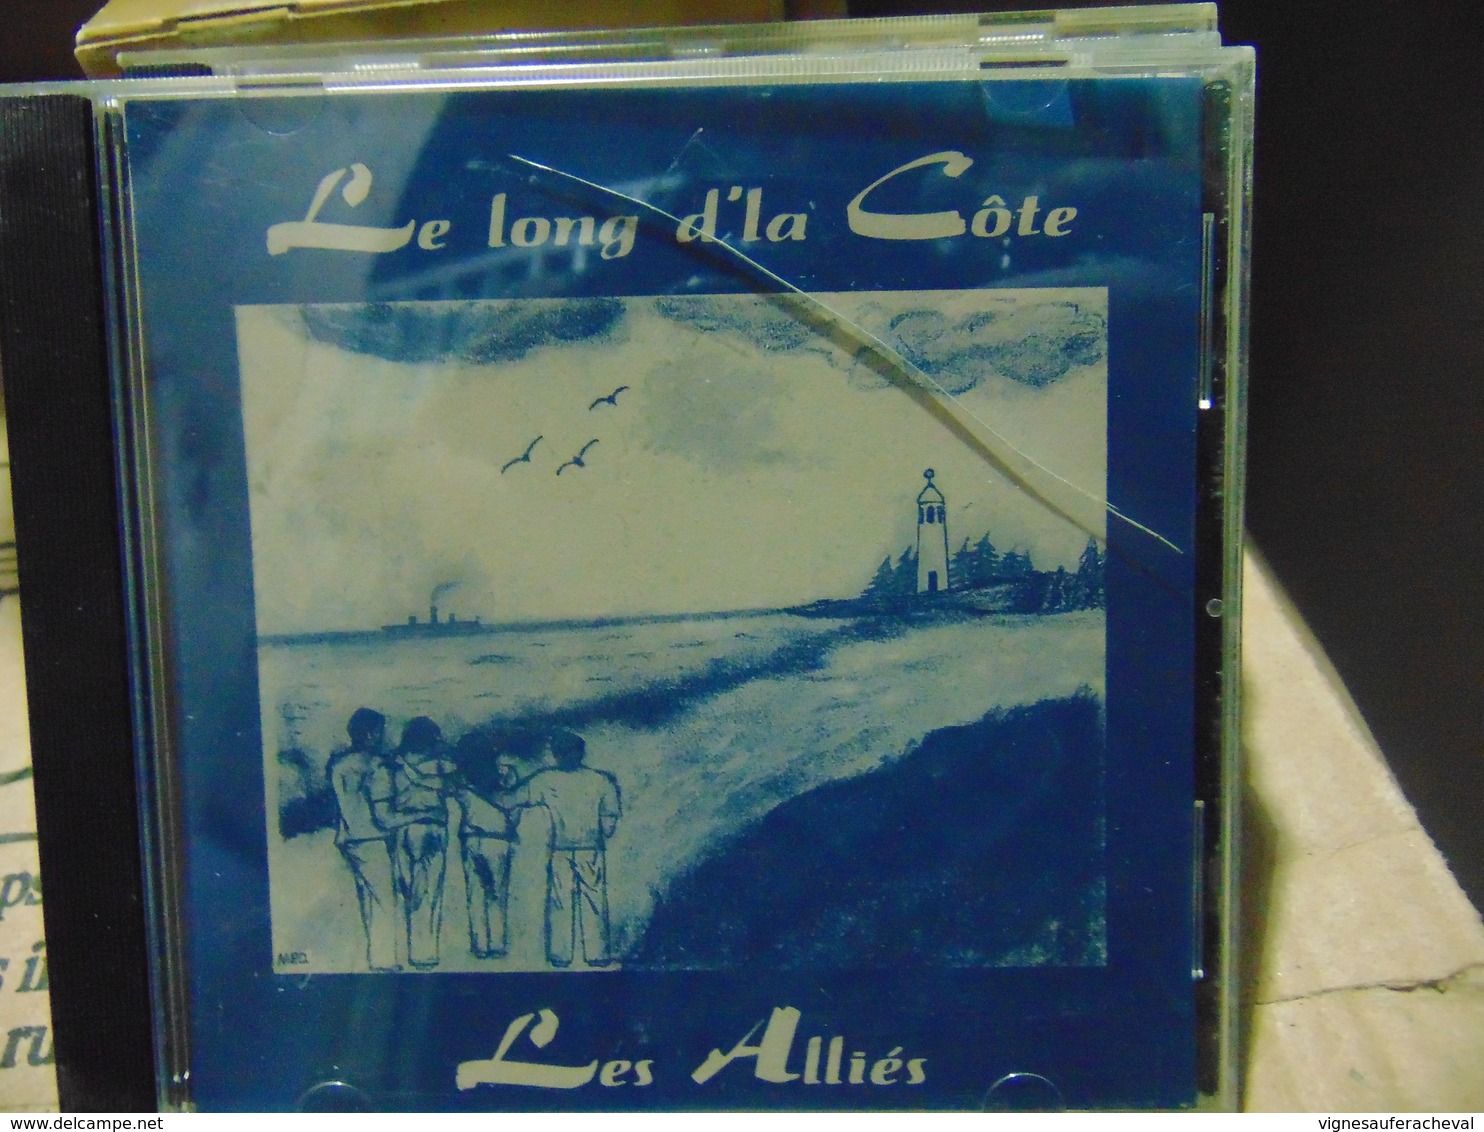 Les Allies- Le Long Dla C[ote (folklorique) - World Music